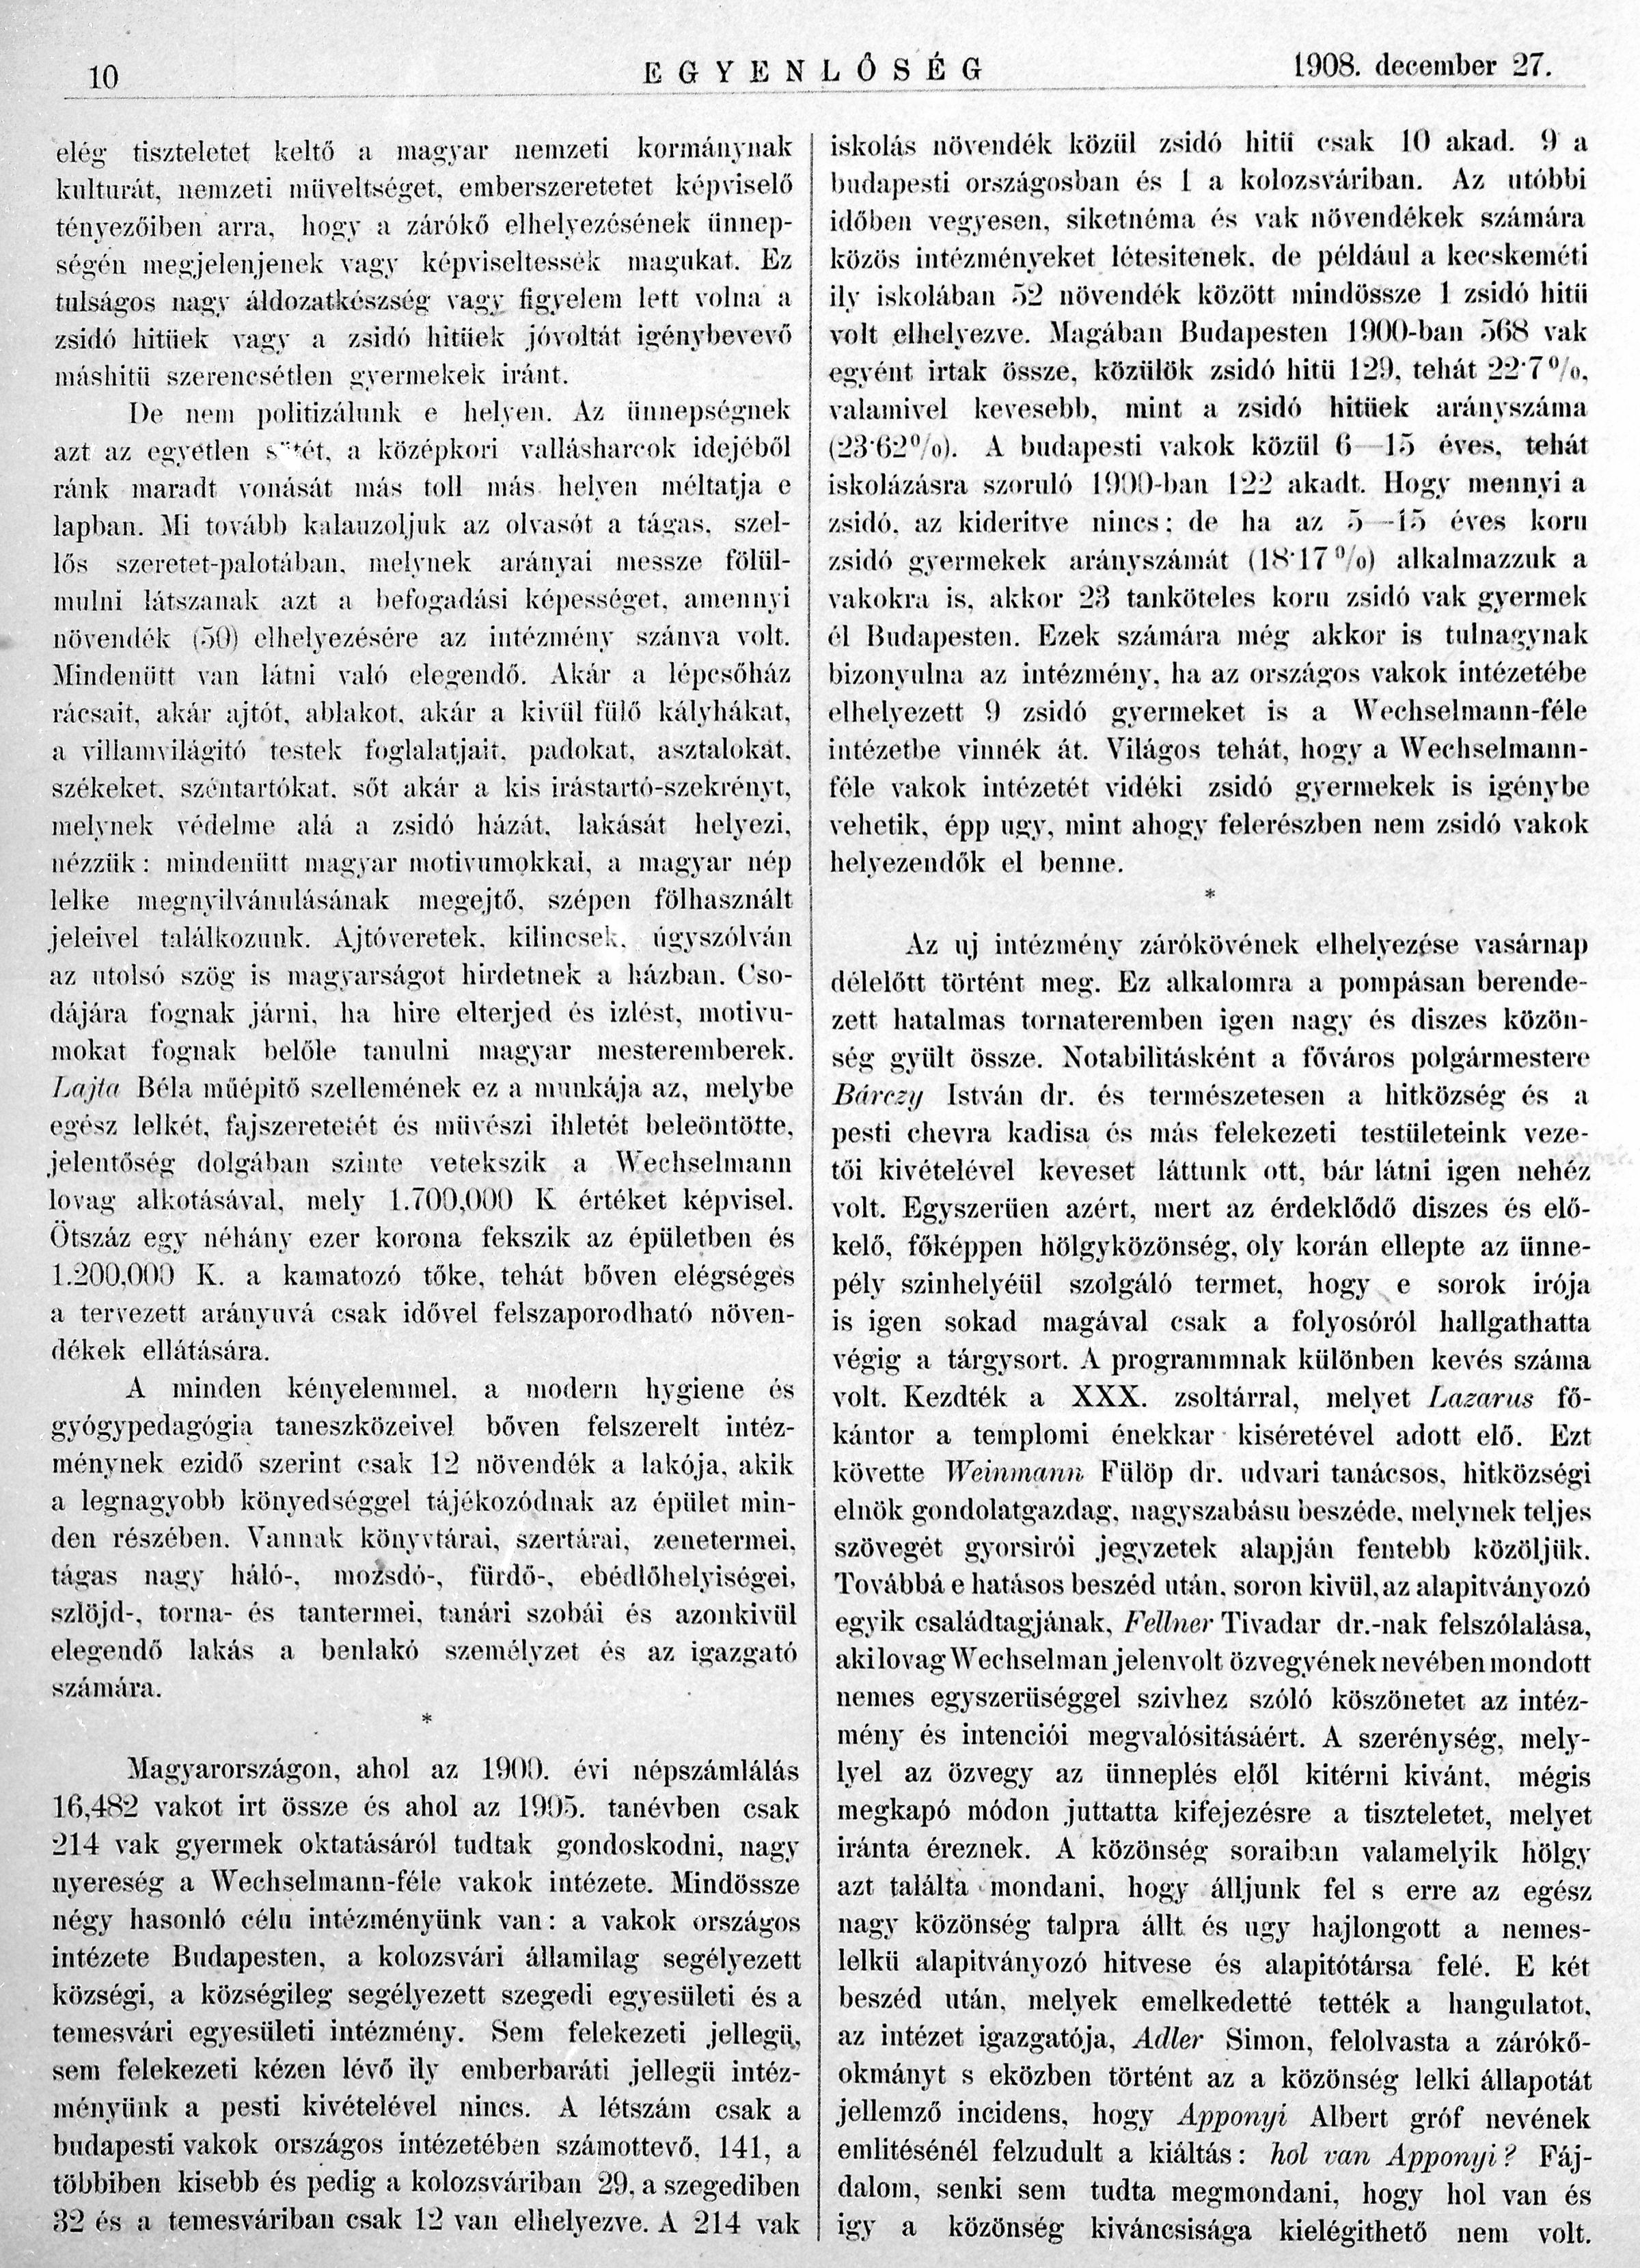 13_Egyenlőség, 1908. XII. 27. 10. p. 